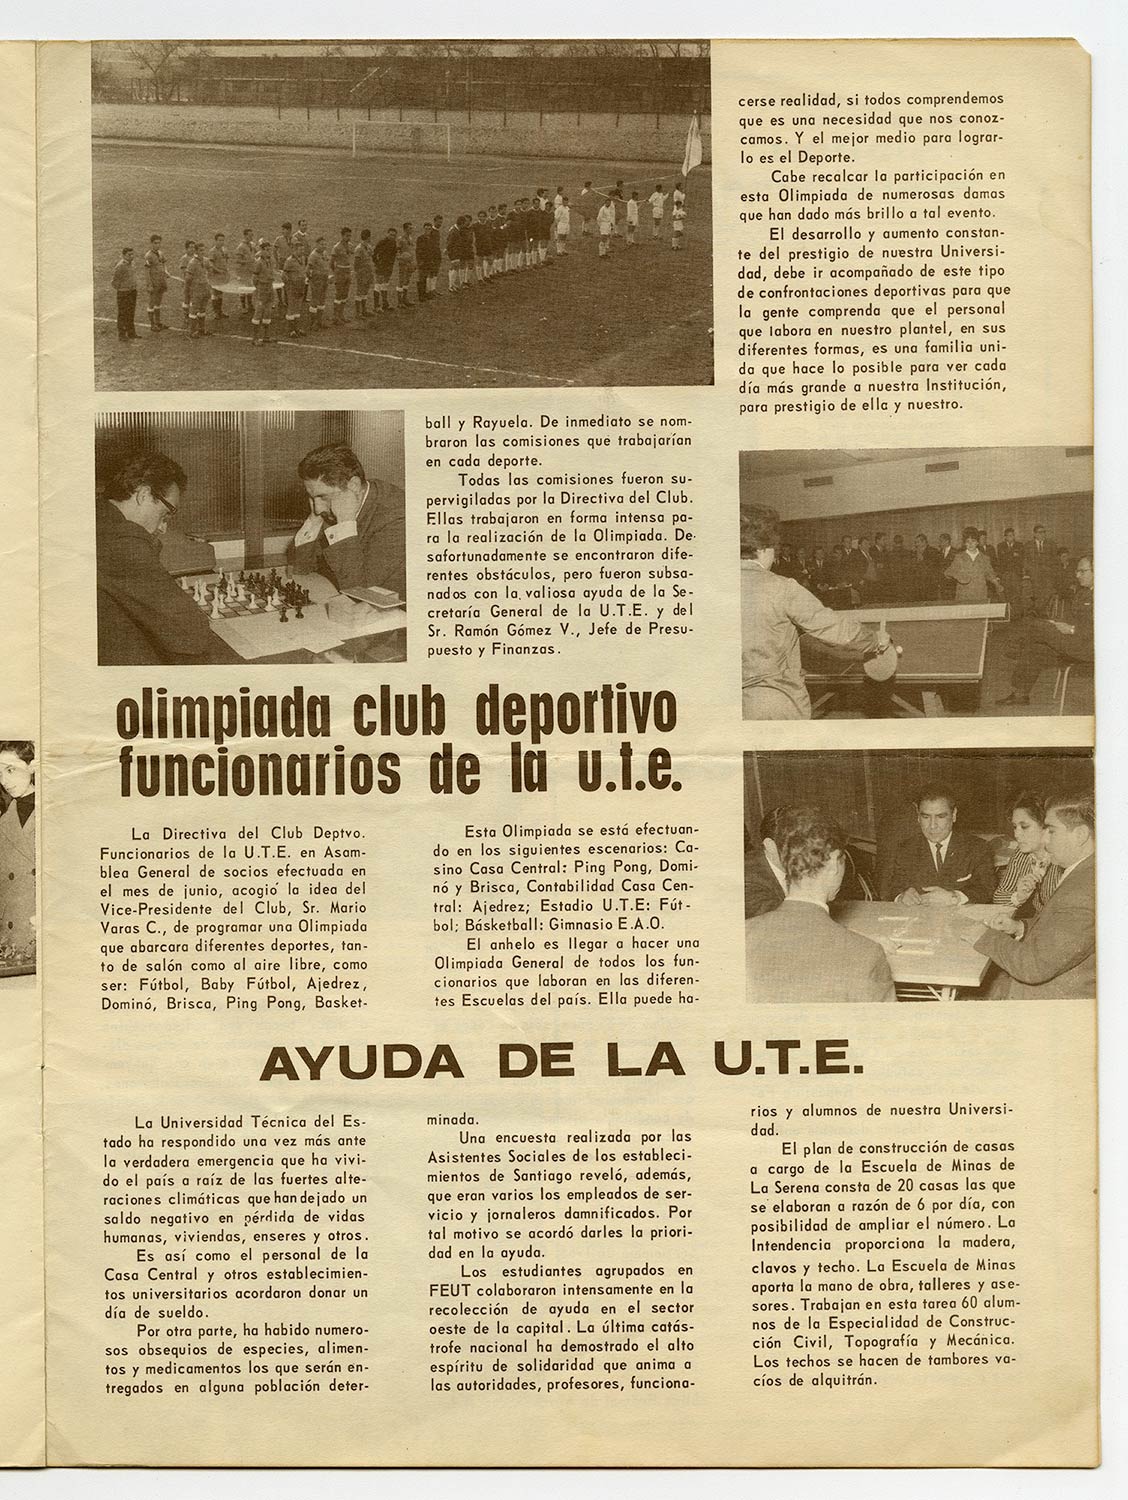 Olimpiadas Club Deportivo Funcionarios UTE – La Gaceta n°6 009, 1965.